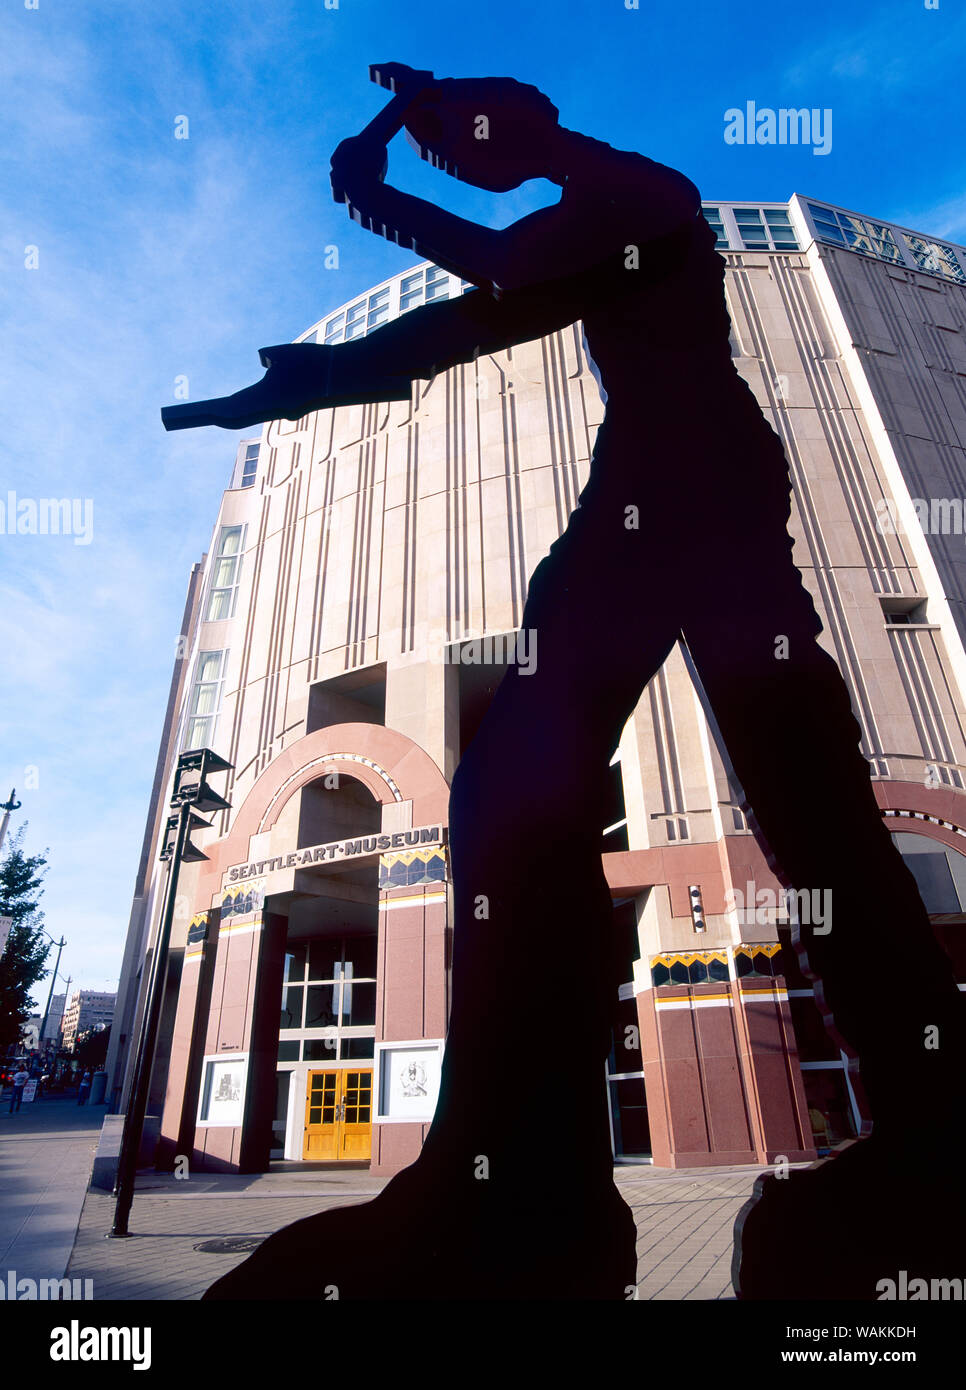 Hämmern Mann kinetische Skulptur von Jonathan Borofsky, installierte 1991 außerhalb von Seattle Art Museum, Seattle, Washington State. (Redaktionelle nur verwenden) (Redaktionelle nur verwenden) Stockfoto